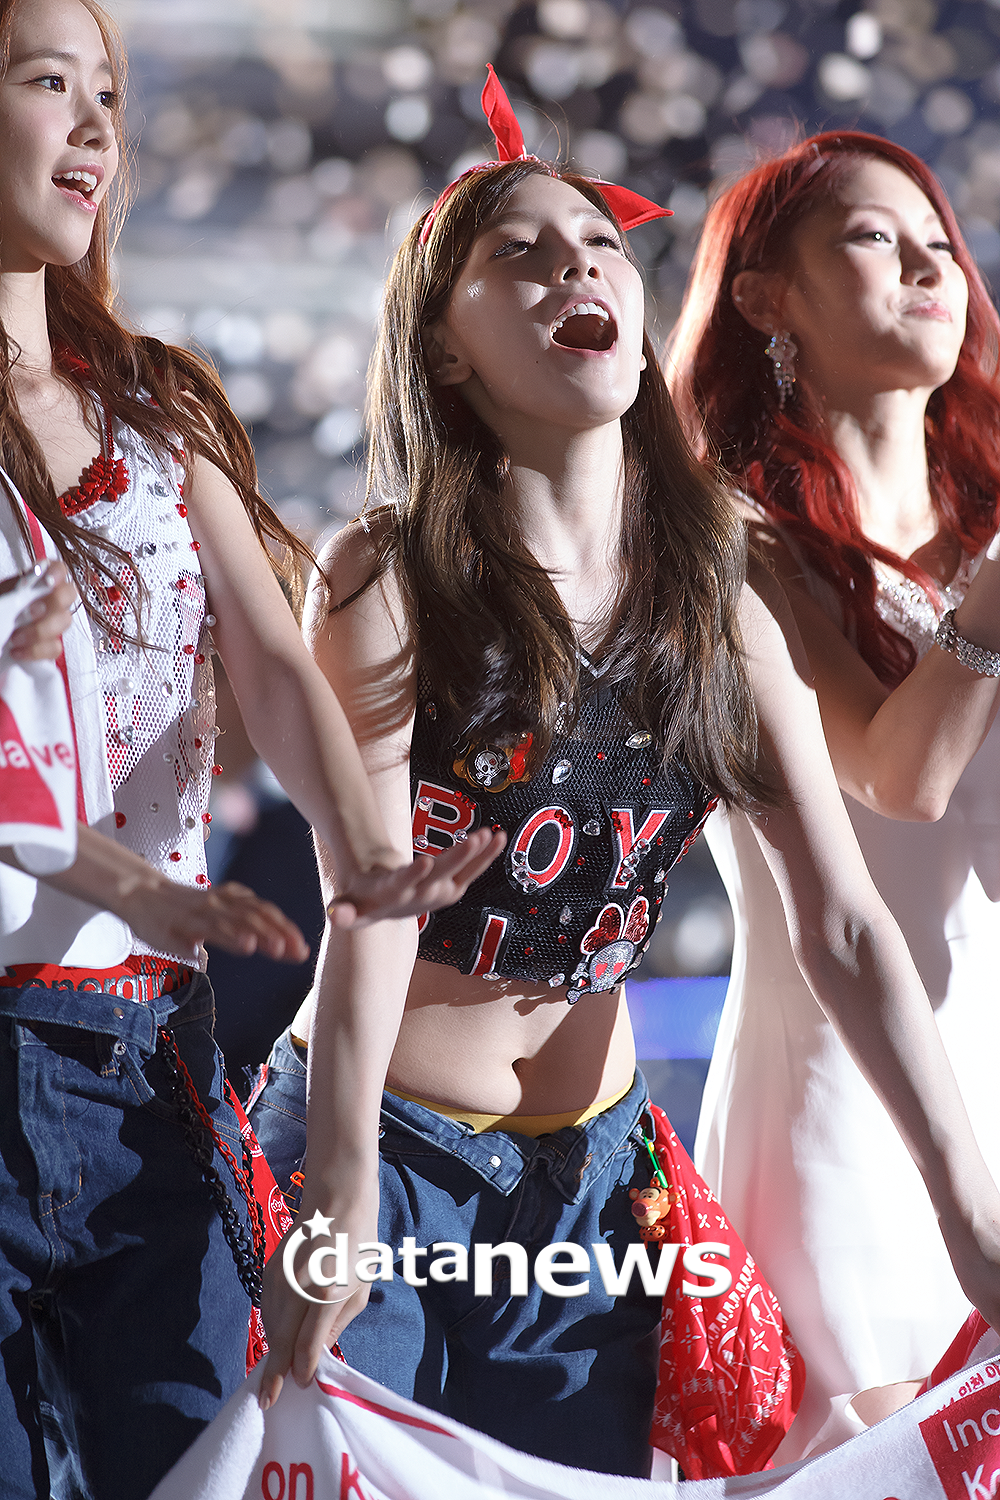 [PIC][01-09-2013]Hình ảnh mới nhất từ "Incheon Korean Music Wave 2013" của SNSD và MC YulTi vào tối nay - Page 2 224F654C52238E2D15D208